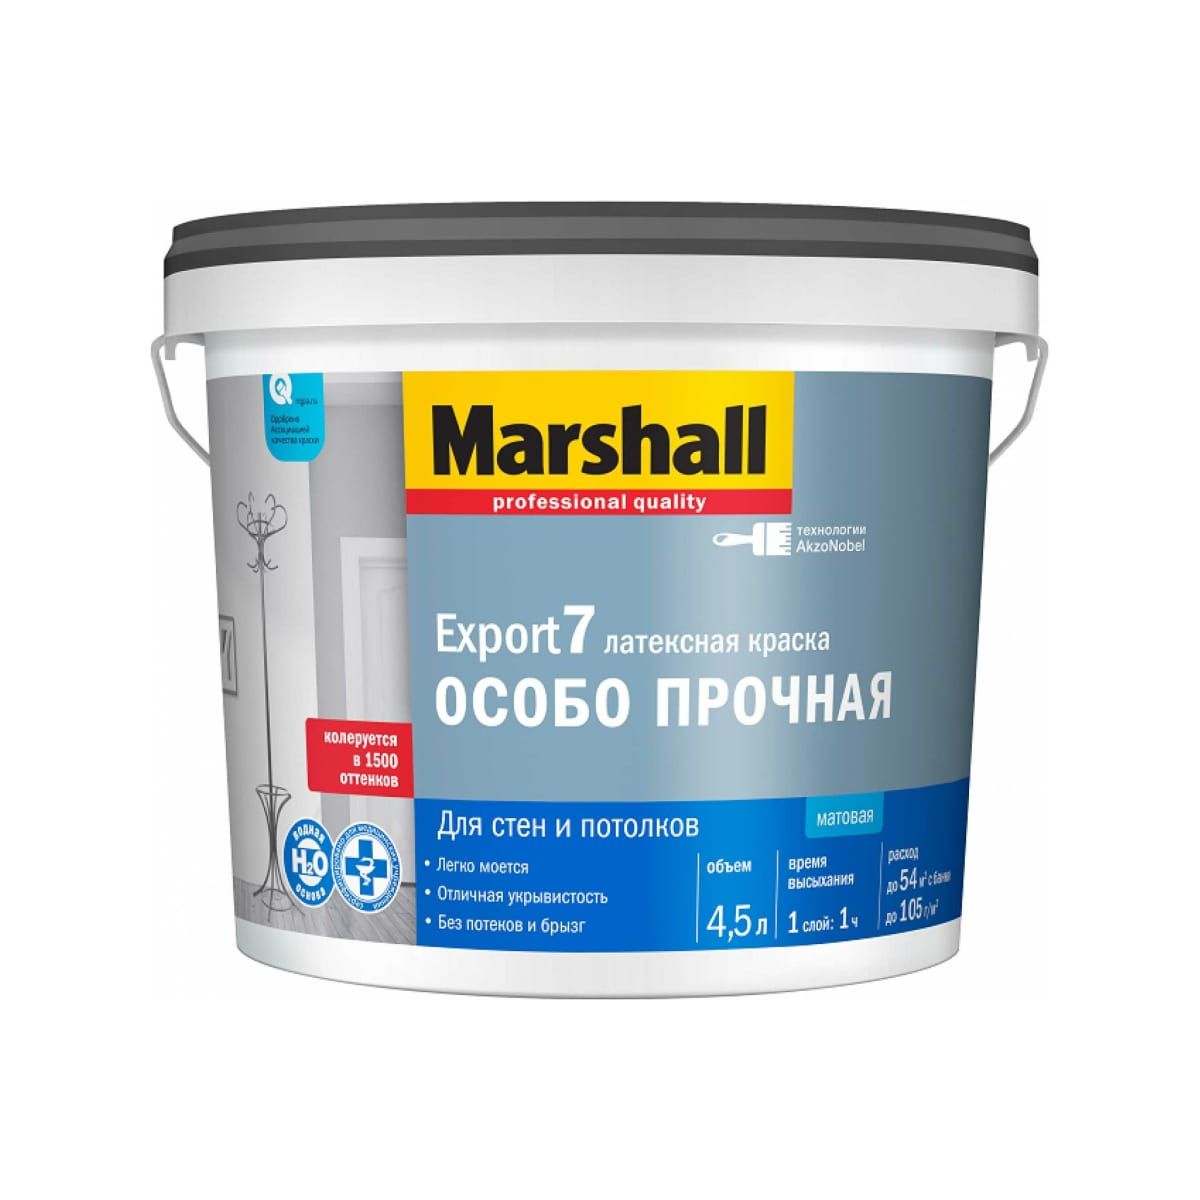 Краска Marshall Export 7 латексная, матовая, BC, 4,5 л краска marshall export 2 латексная глубокоматовая база bw 4 5 л